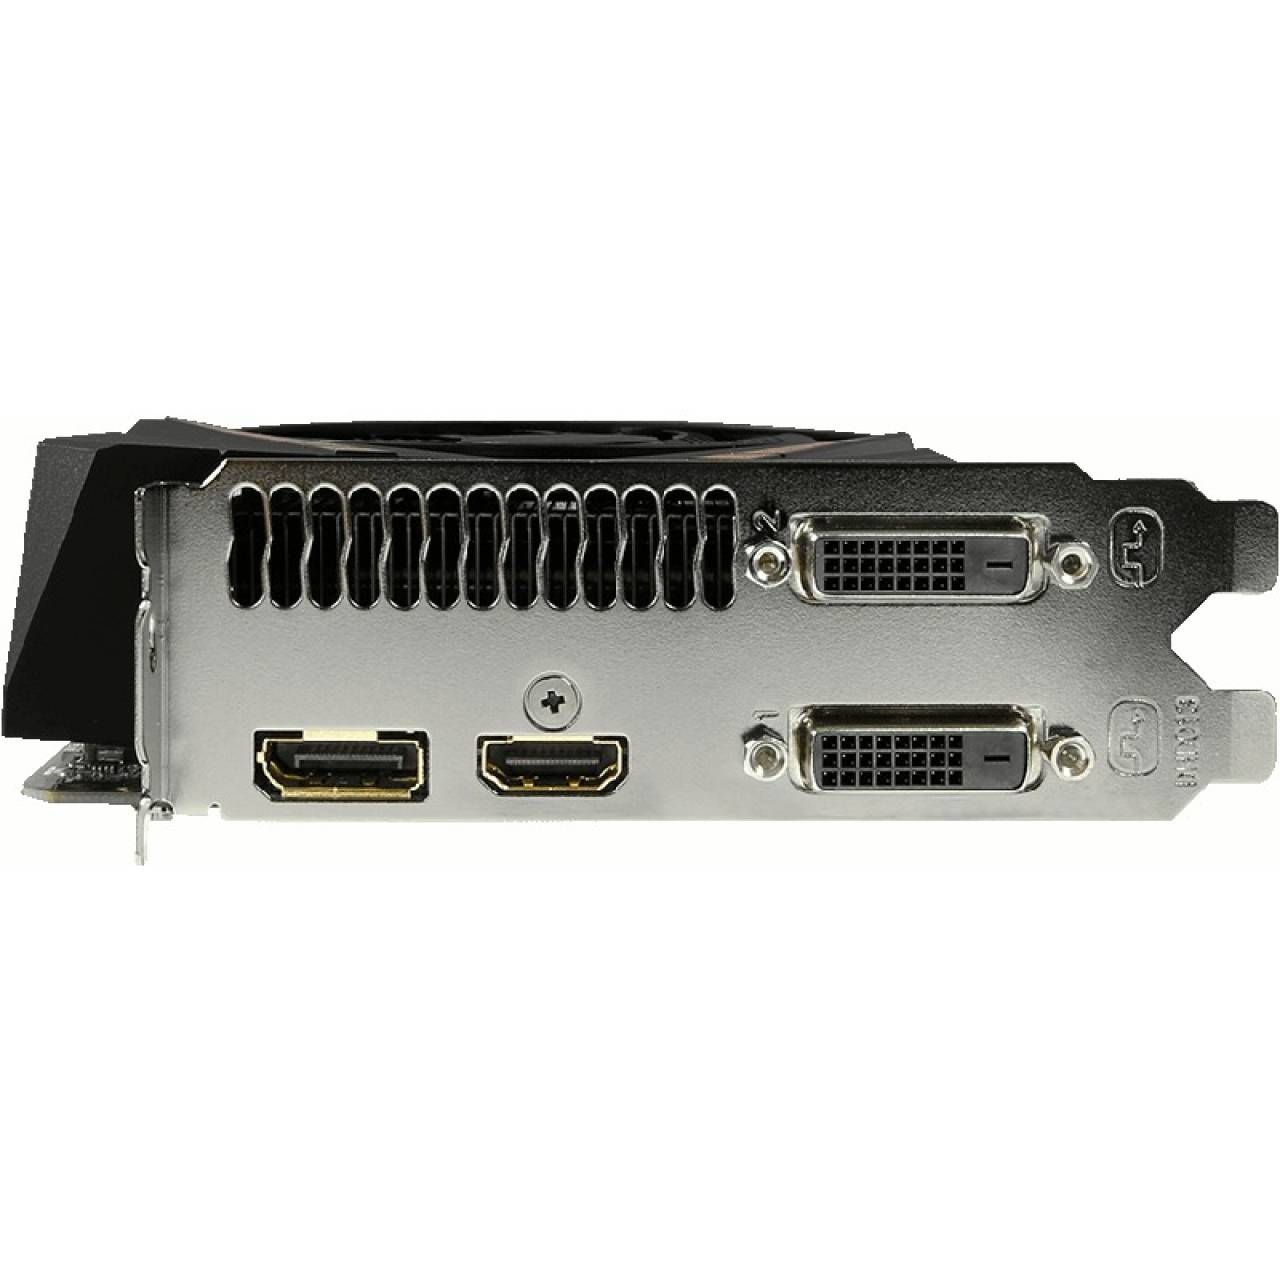 Placa video GIGABYTE GeForce GTX 1060 Mini ITX 3GB GDDR5 192-bit 3GB